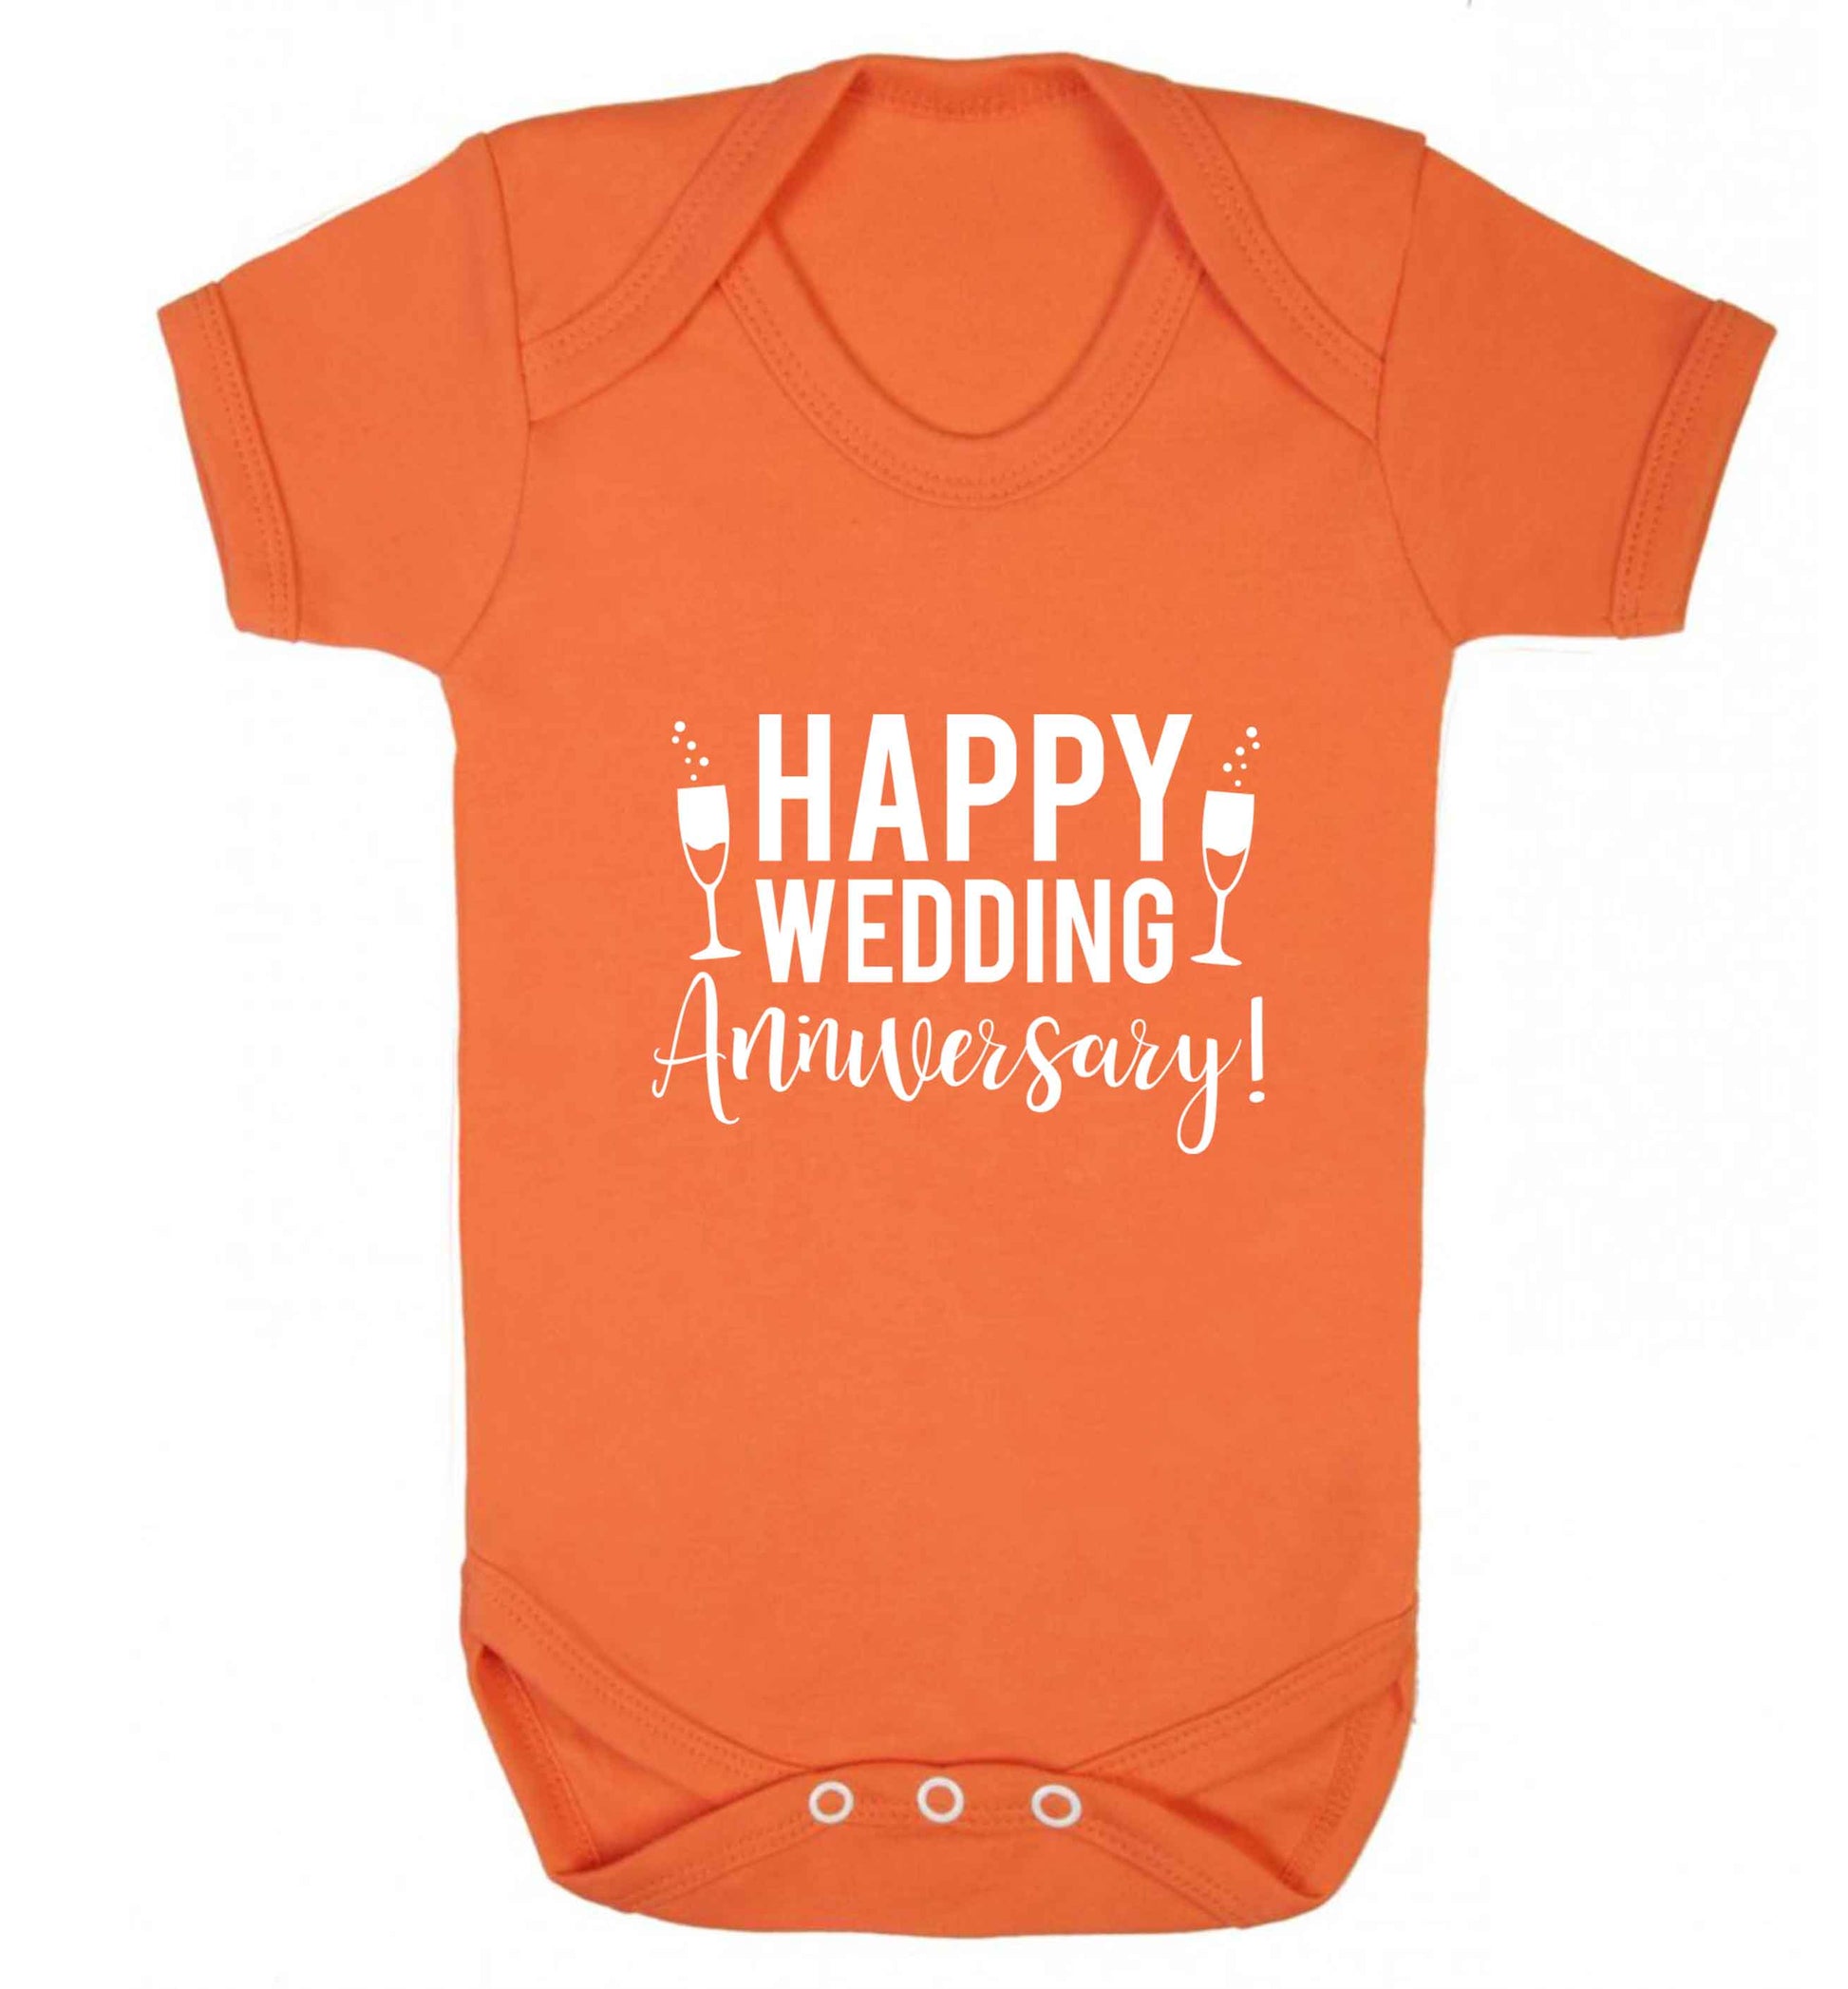 Happy wedding anniversary! baby vest orange 18-24 months